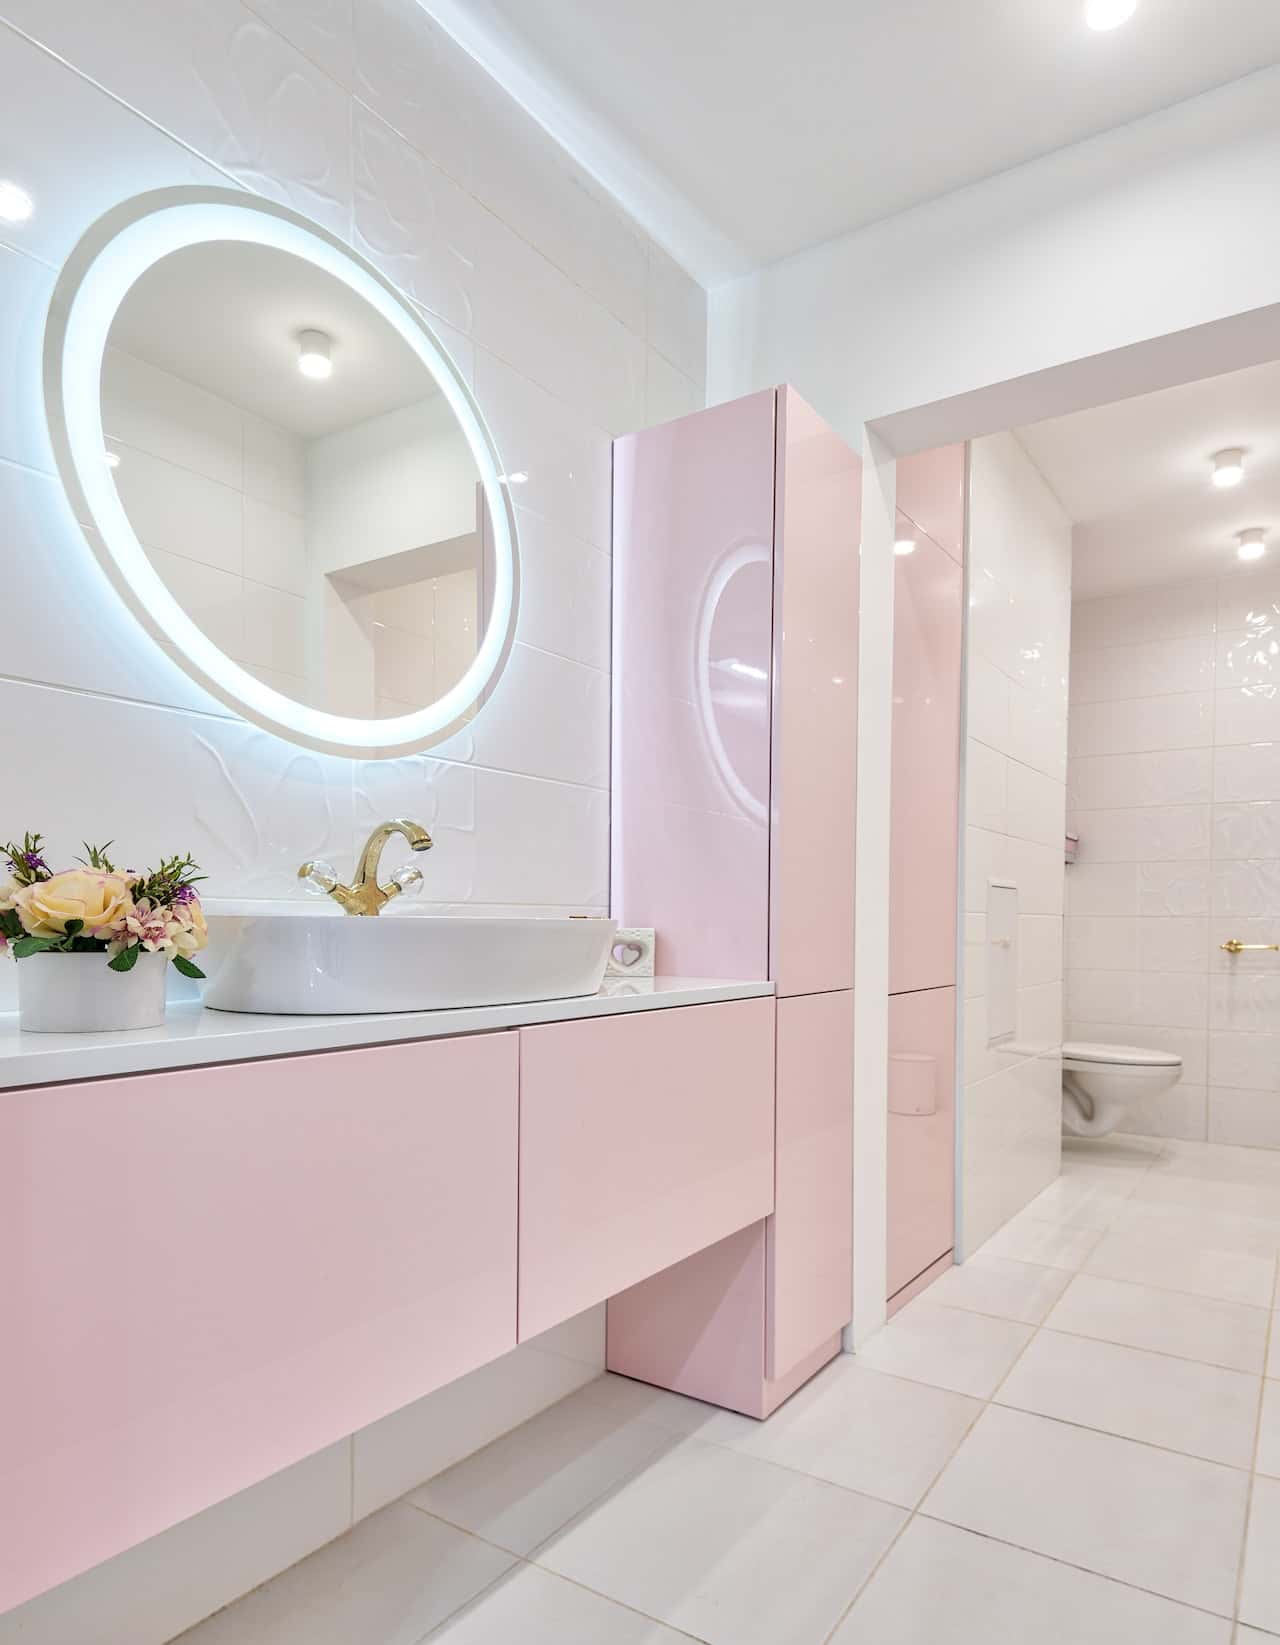 luxe bathroom barbiecore design - Hier leest u hoe u een prachtige Barbiecore-droomkamer kunt ontwerpen